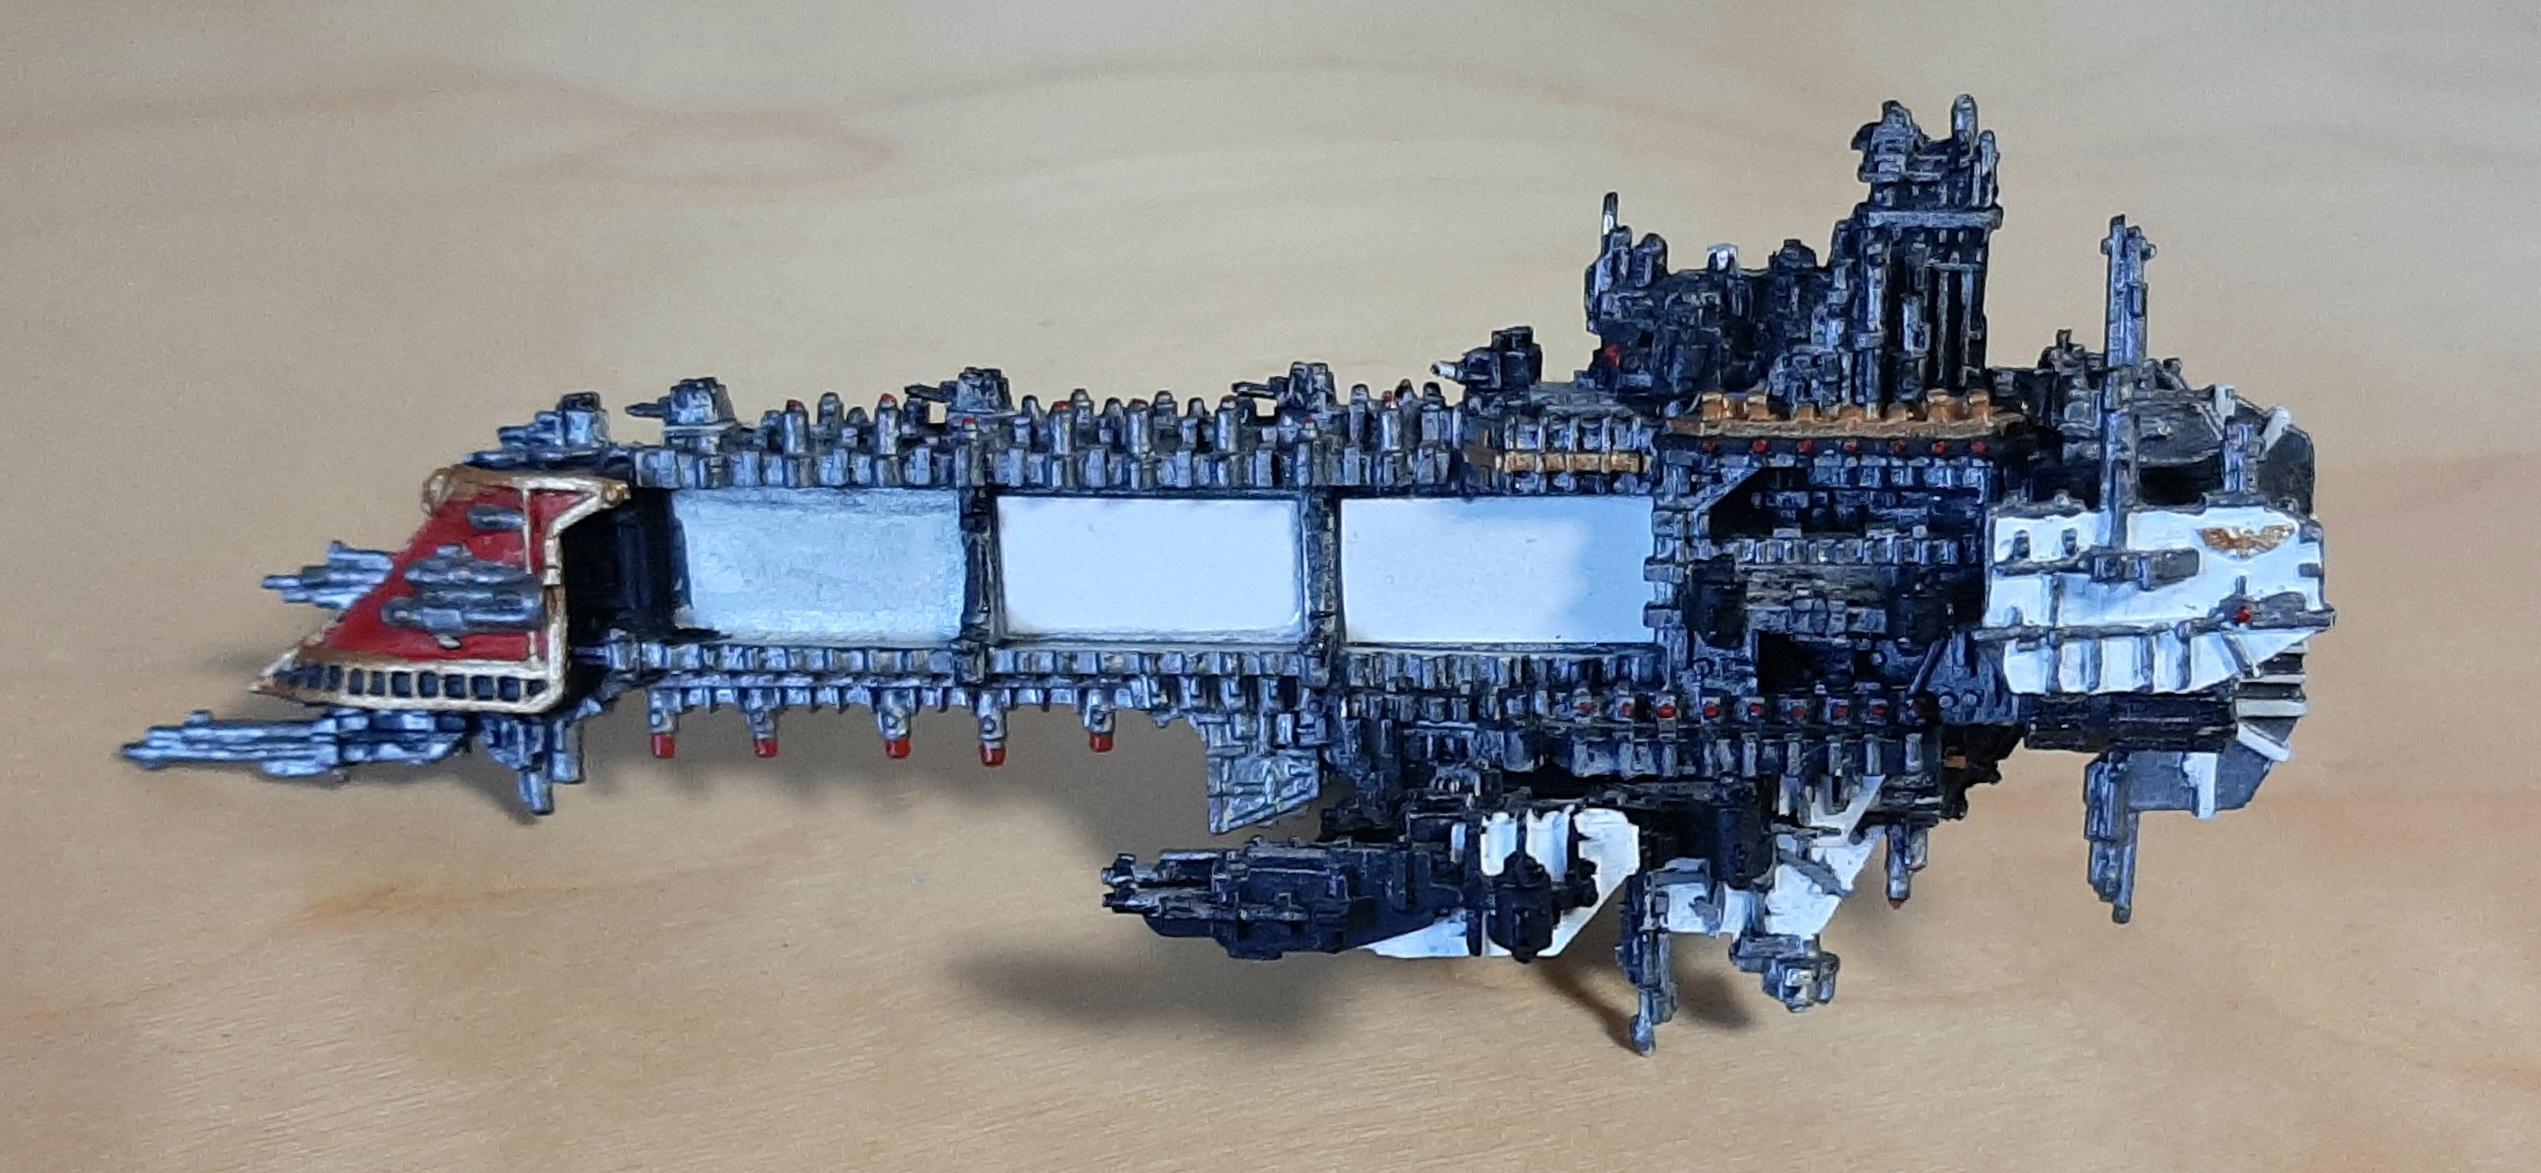 warhammer emperor class battleship